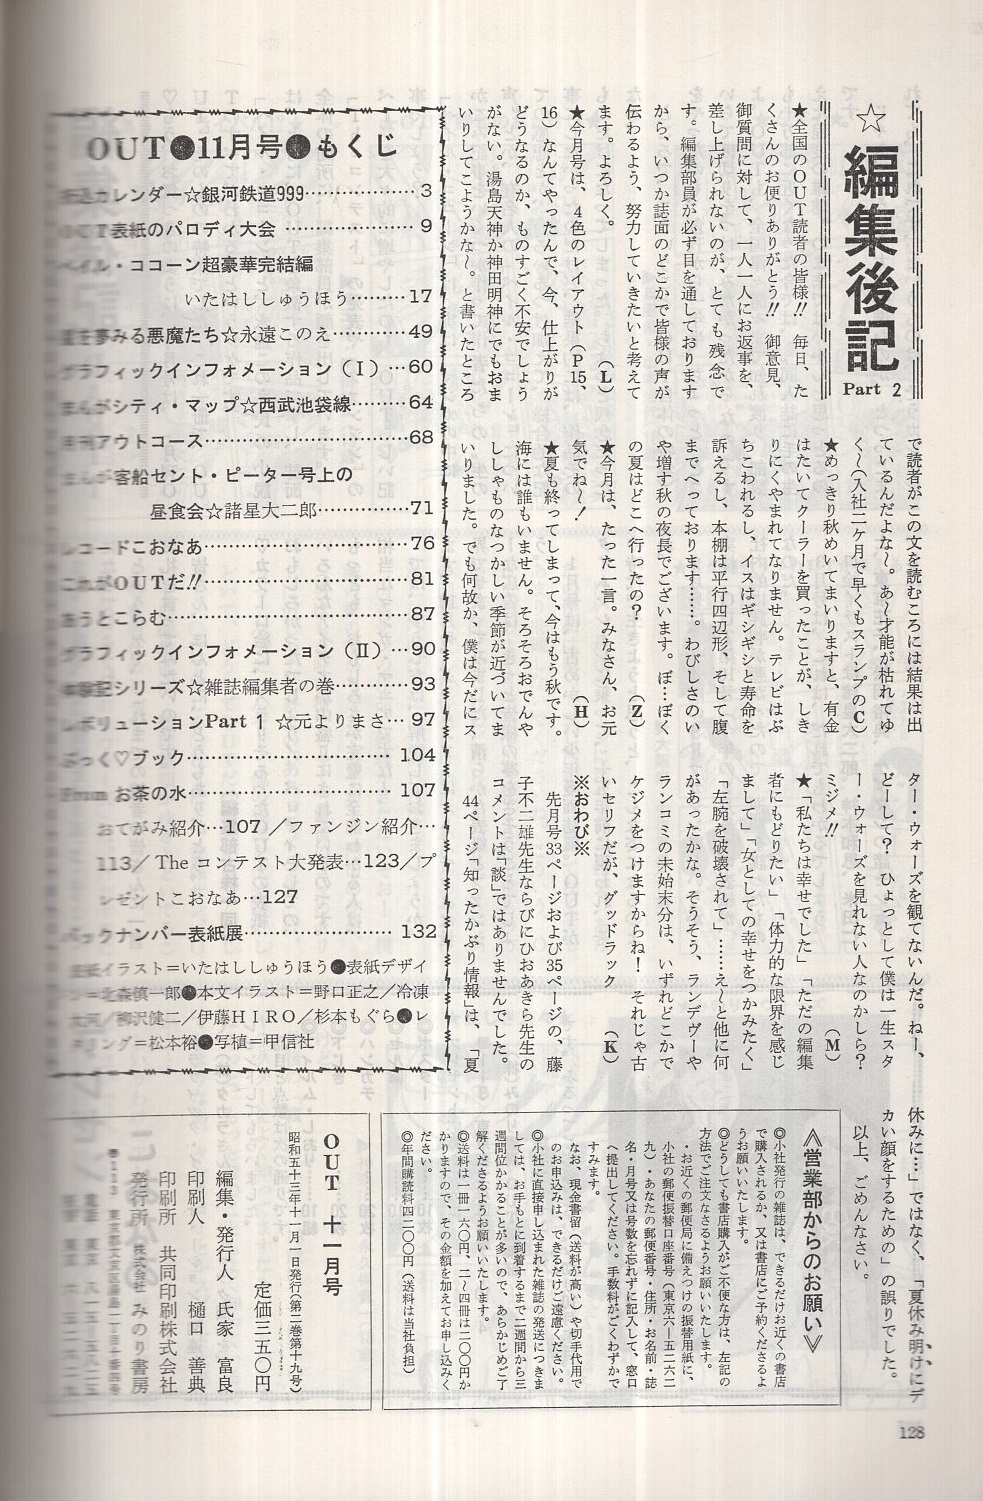 月刊アウト 昭和53年11月号 表紙イラスト・いたはししゅほう(〈綴込 